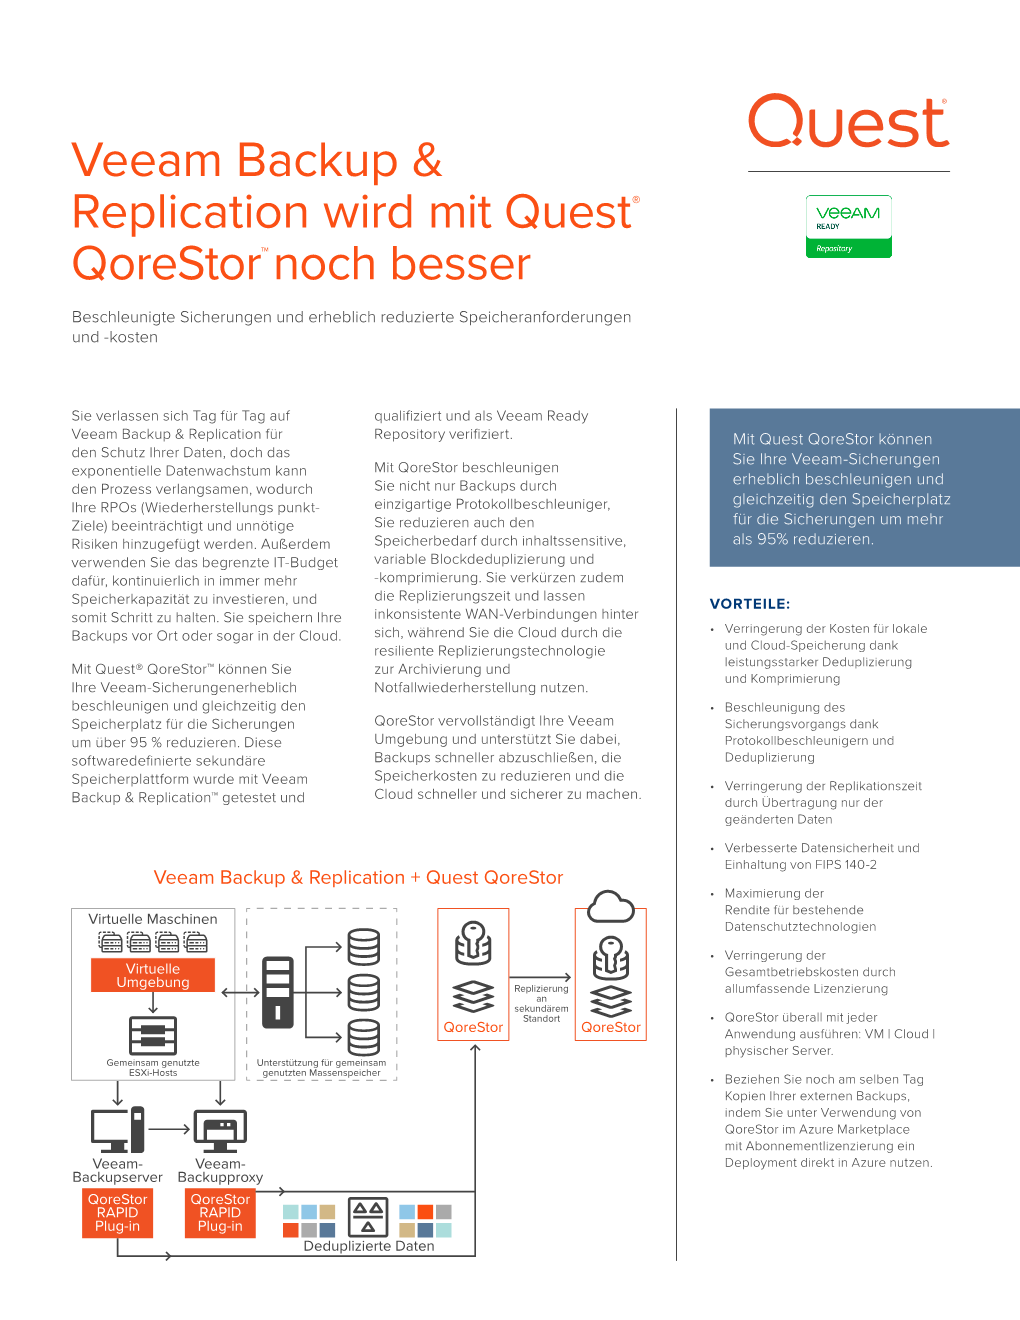 Veeam Backup & Replication Wird Mit Quest® Qorestor™ Noch Besser